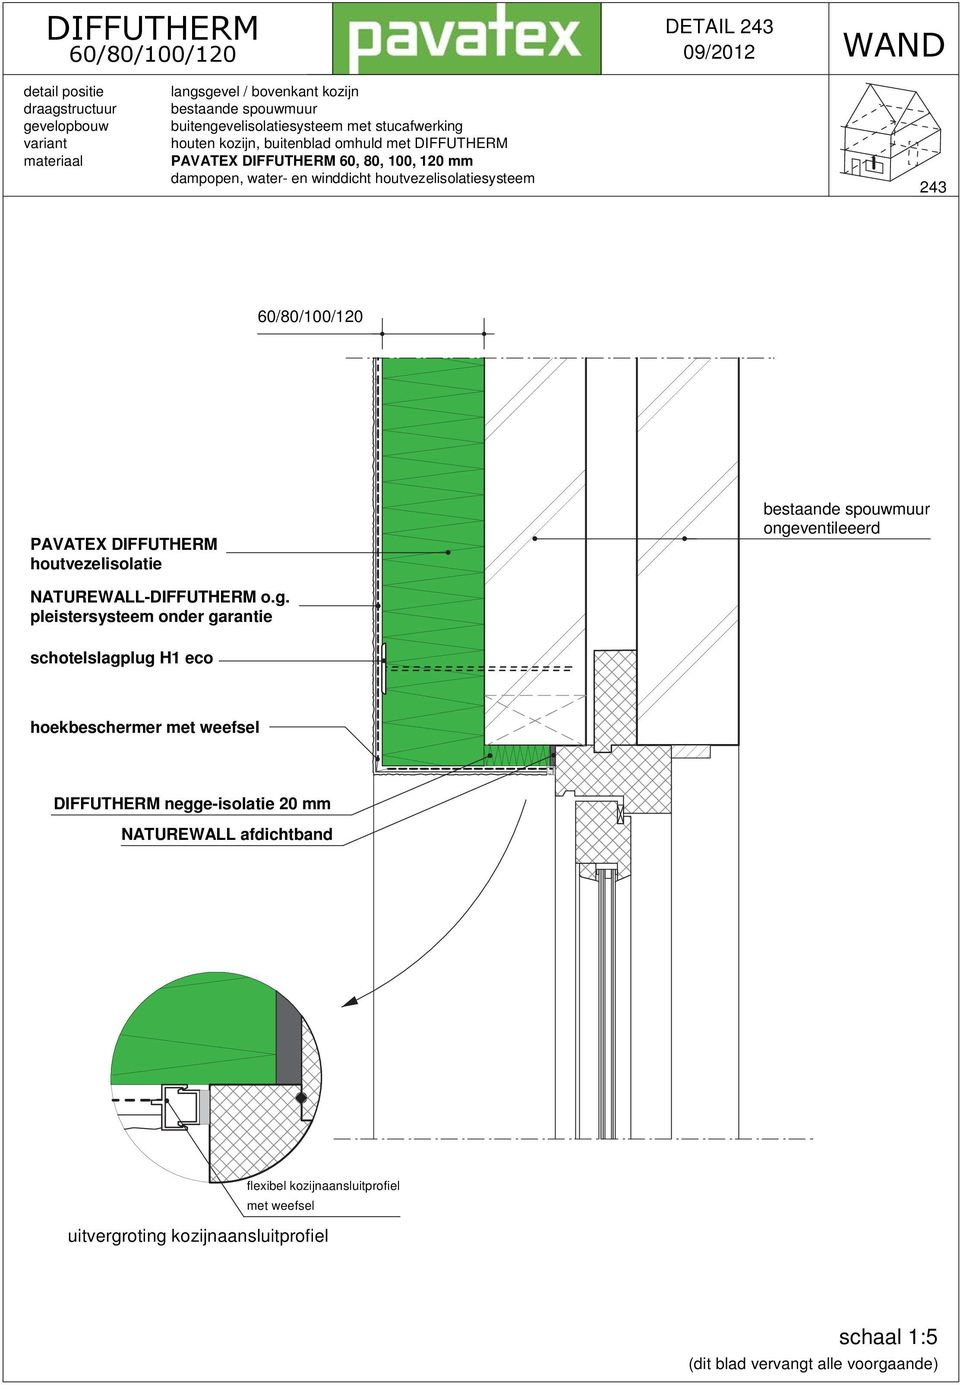 bestaande spouwmuur ongeventileeerd hoekbeschermer met weefsel DIFFUTHERM negge-isolatie 20 mm